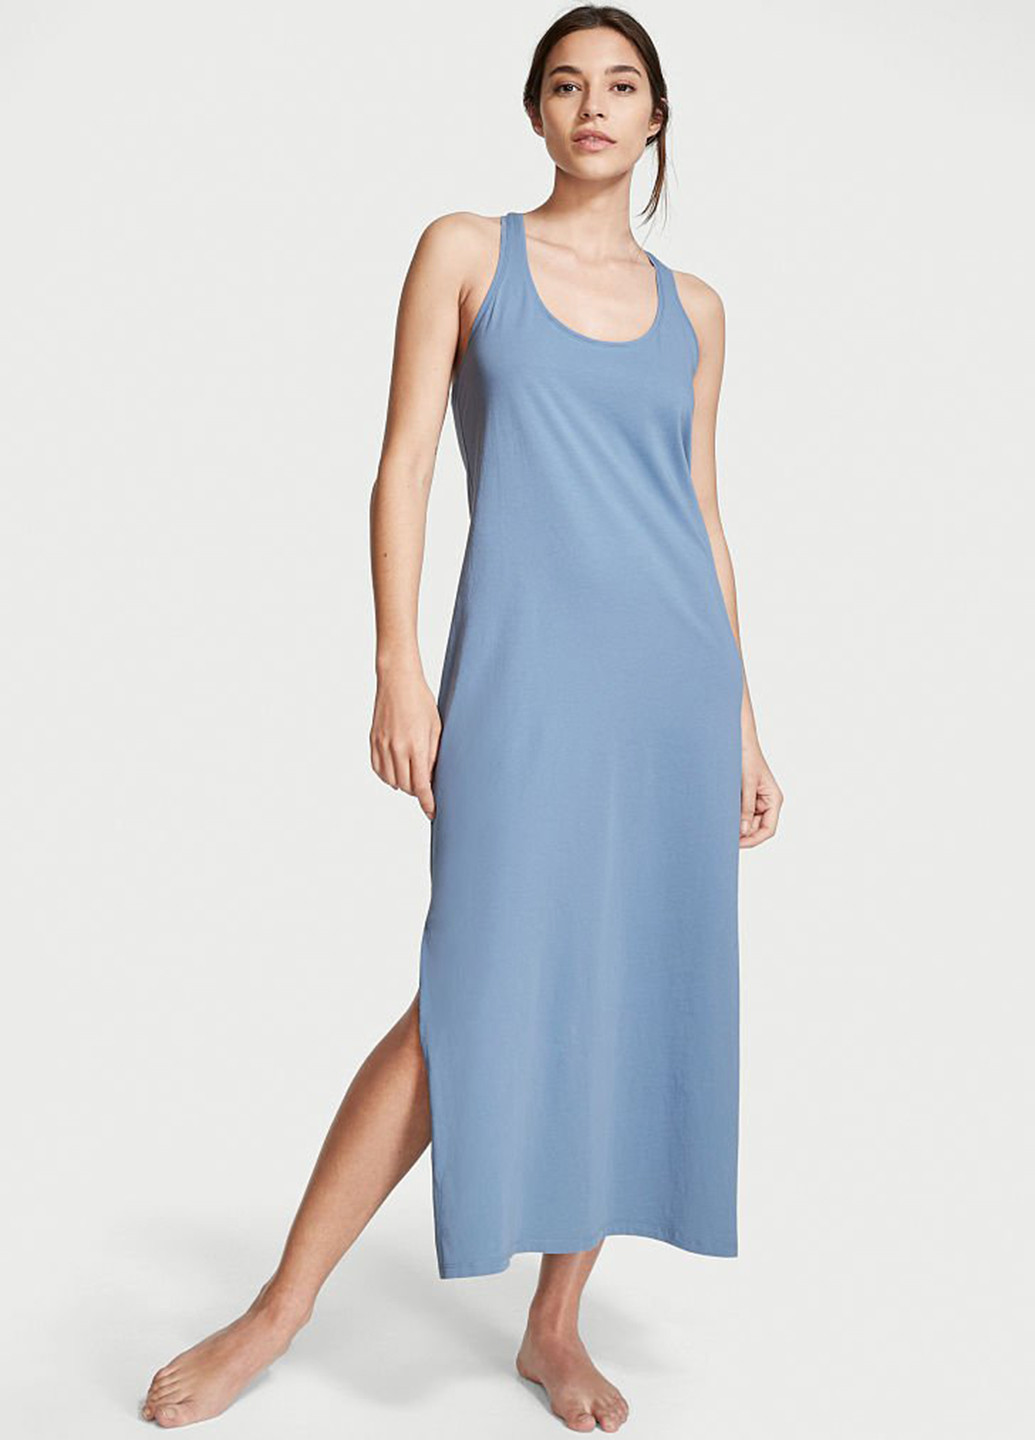 Серо-голубое домашнее платье платье-майка Victoria's Secret однотонное